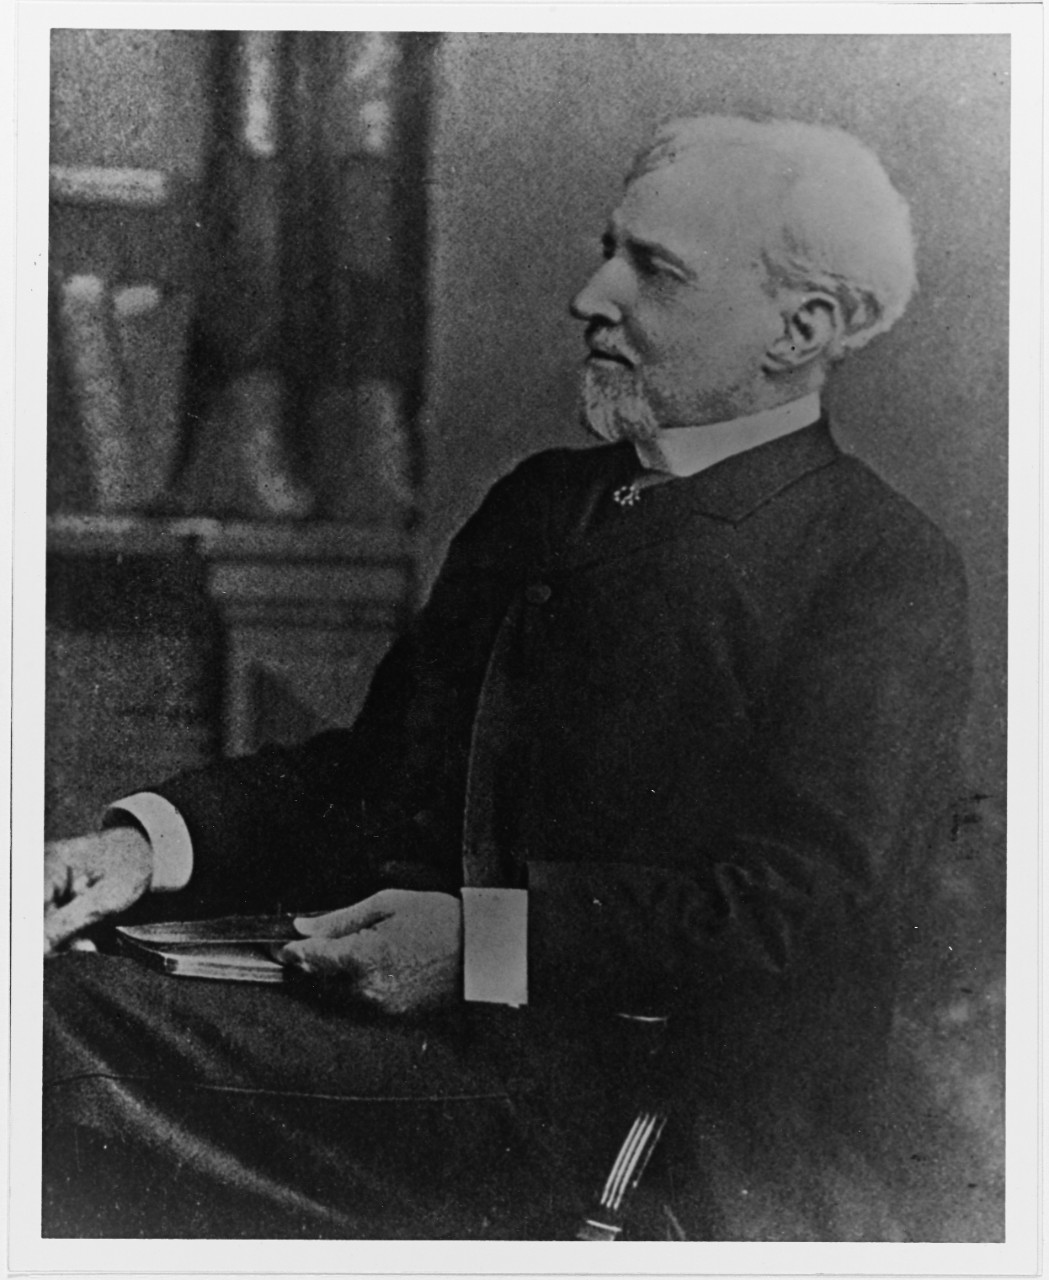 Captain William D. Sharp, USN